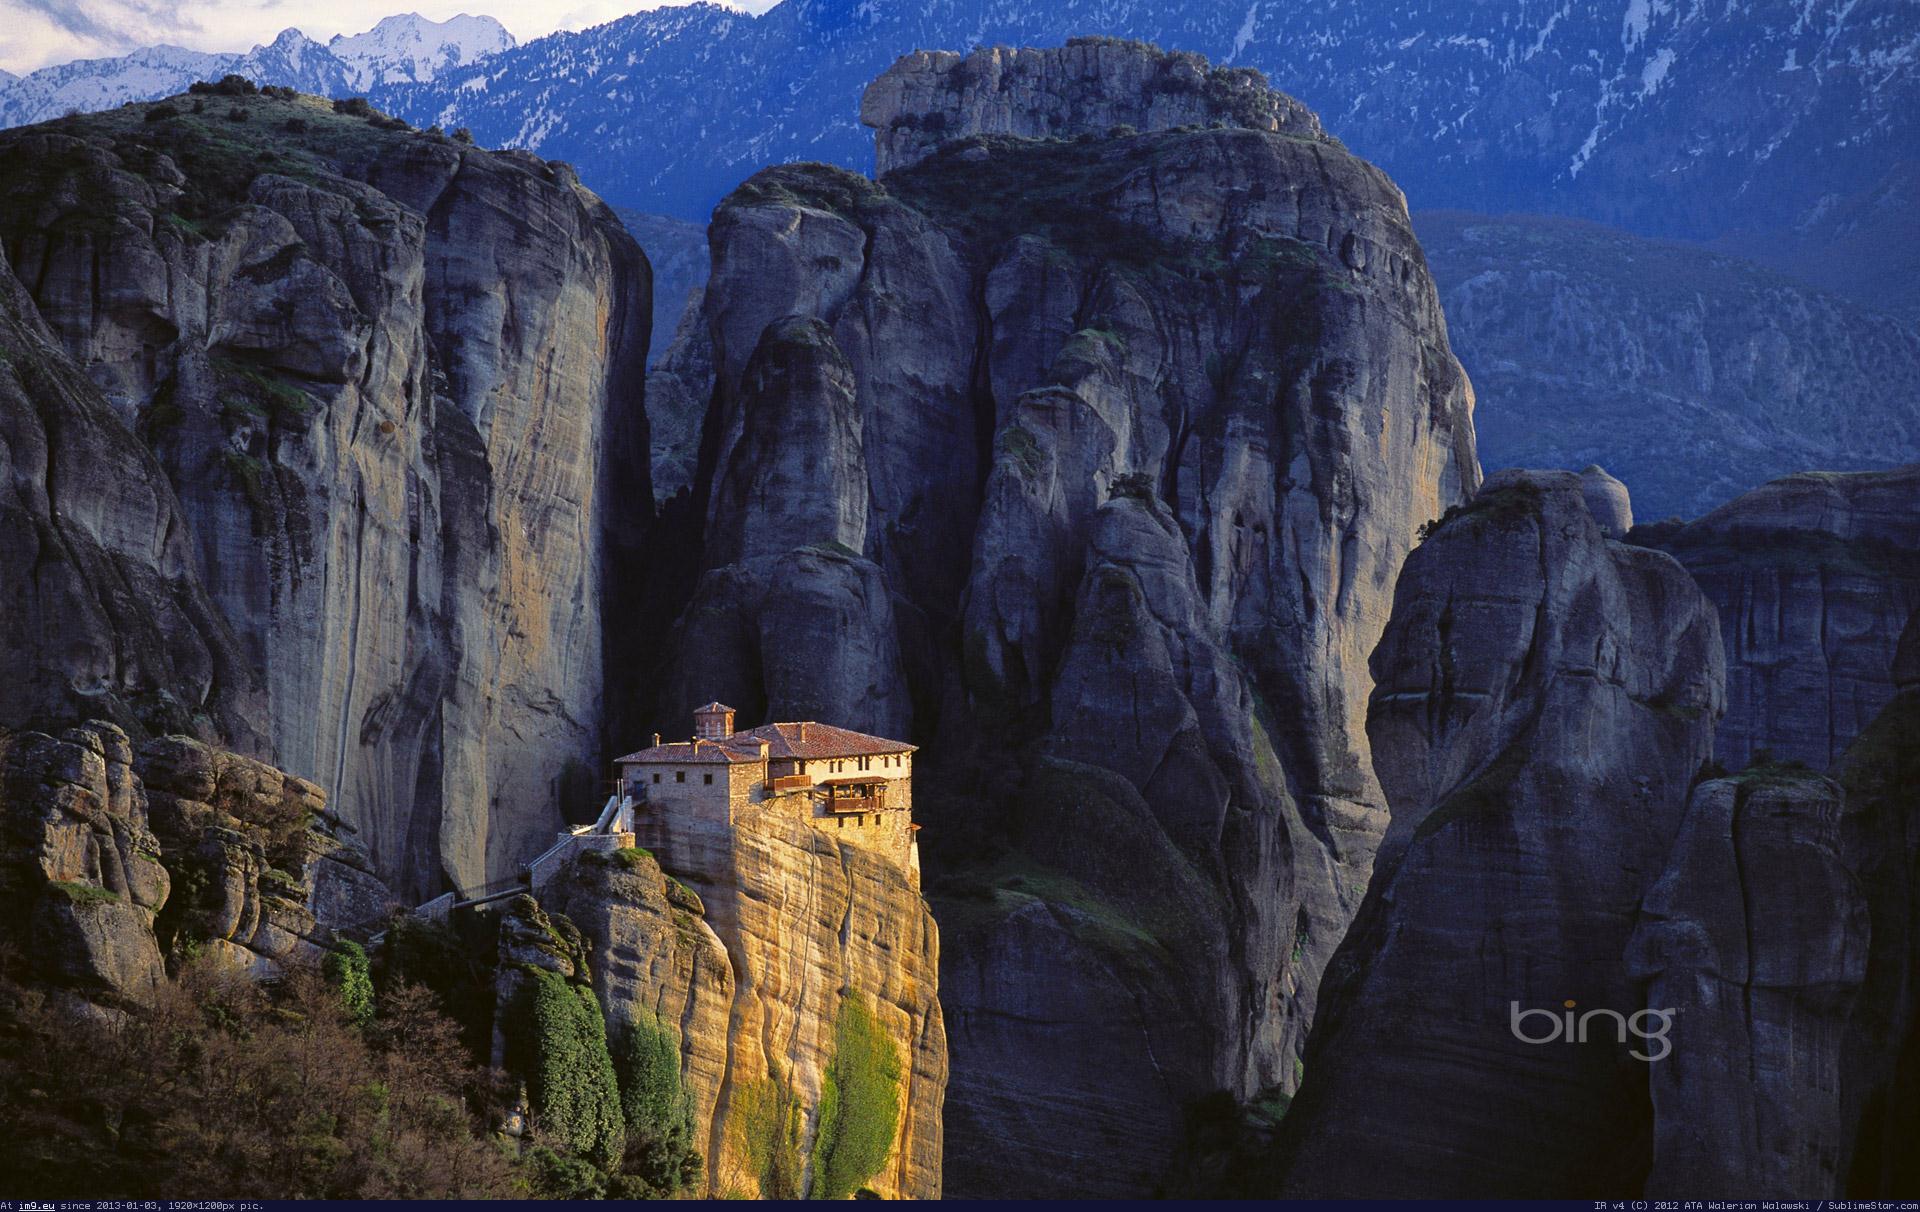 Www bing com image. Гора-Клифф. Ущелье Борго Трансильвания. Скальные башни Meteora Греция. Монастырь в горы на вершине горы Испании.